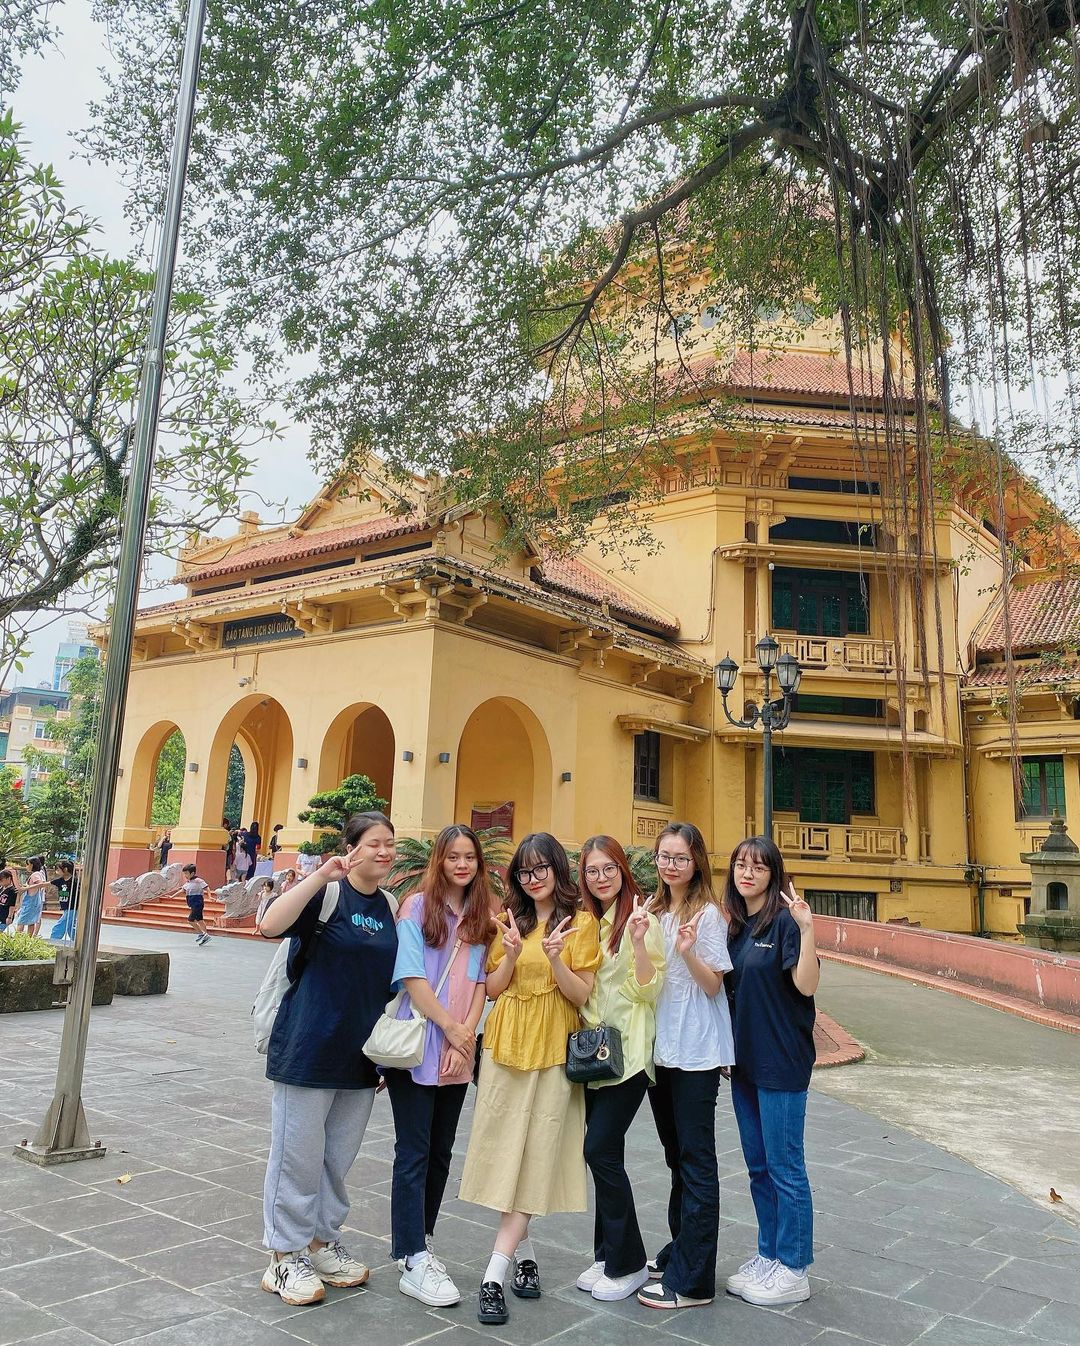 Cuối tuần đổi gió thăm thú các bảo tàng ở Hà Nội: Sao nỡ đi đâu khi Thủ đô còn vô vàn địa điểm đẹp như này - ảnh 14